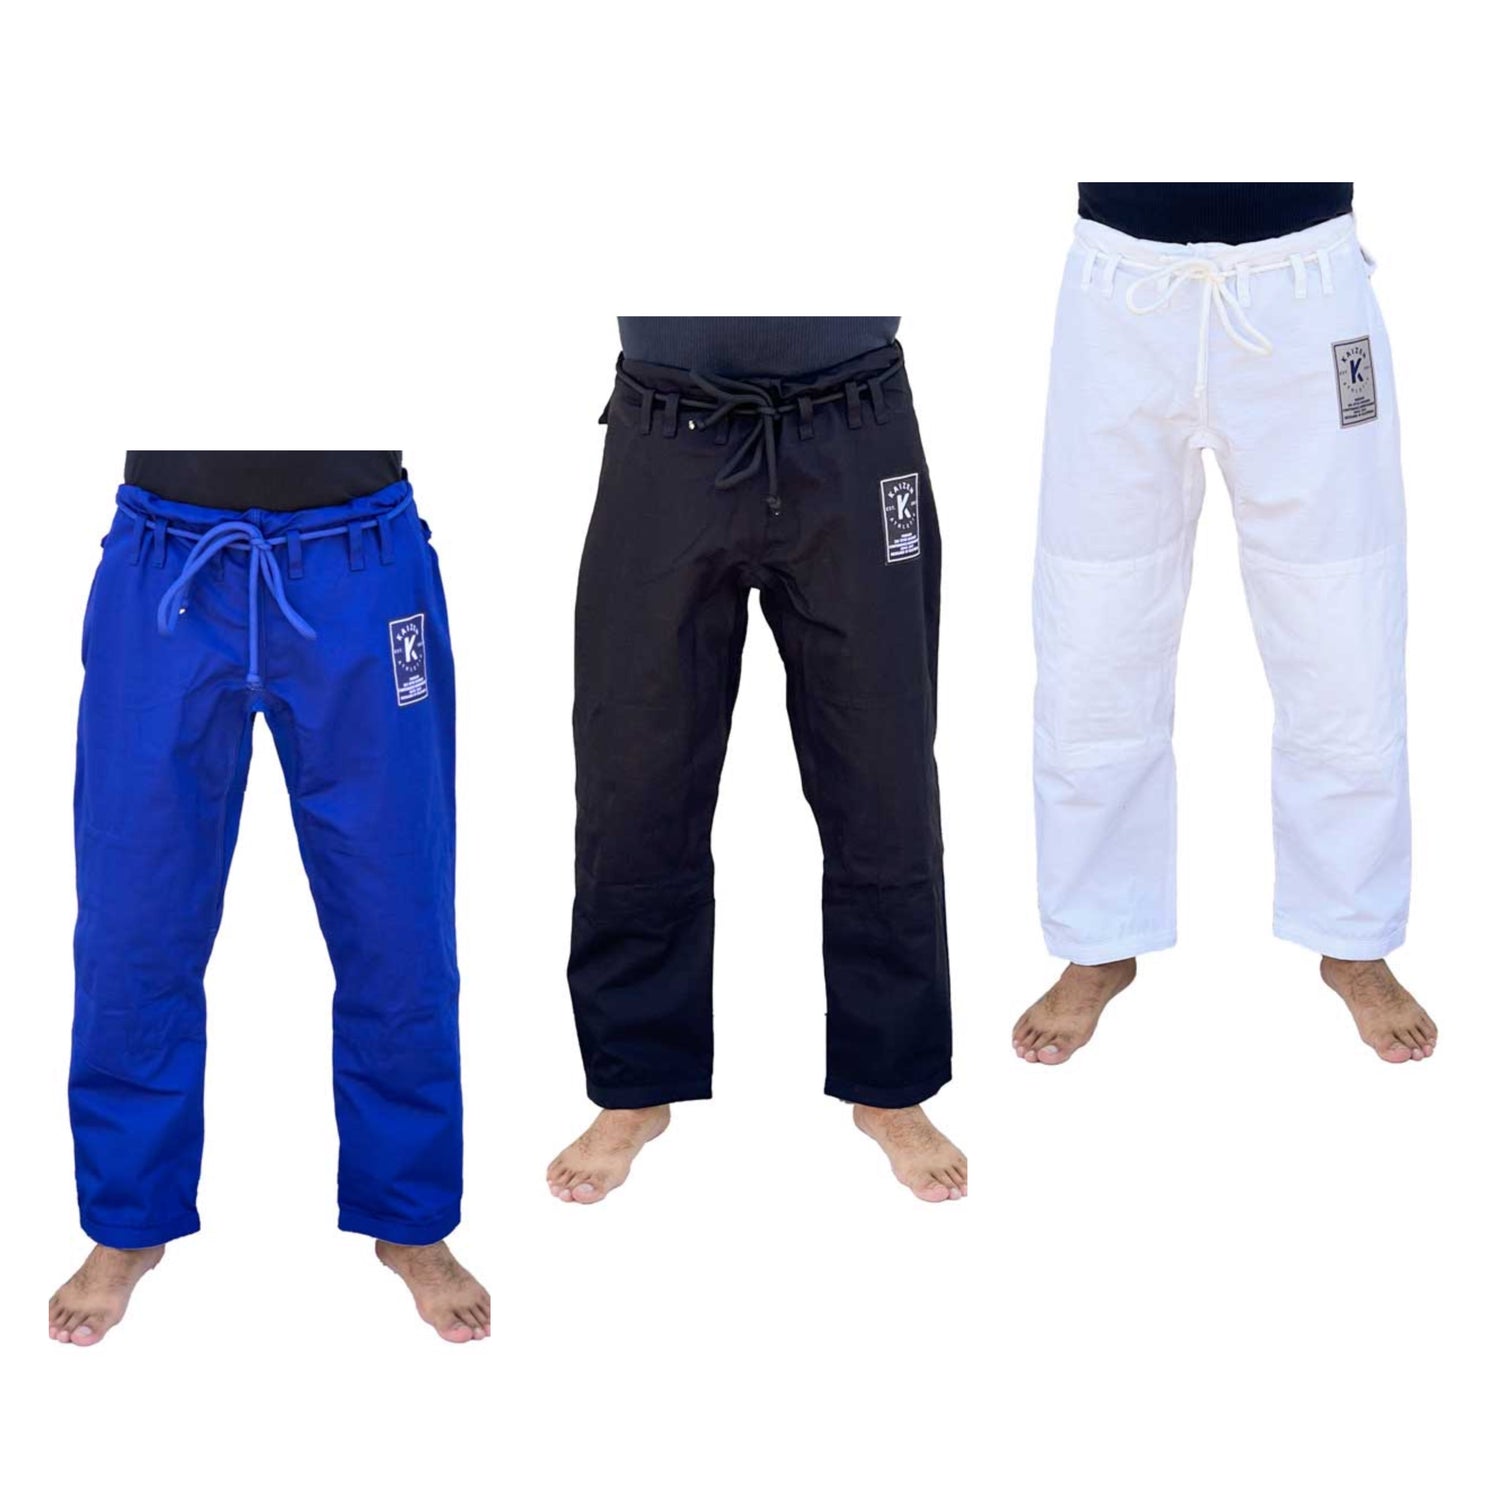 BJJ Gi Pants by Kaizen Athletic (White, Blue, Black)